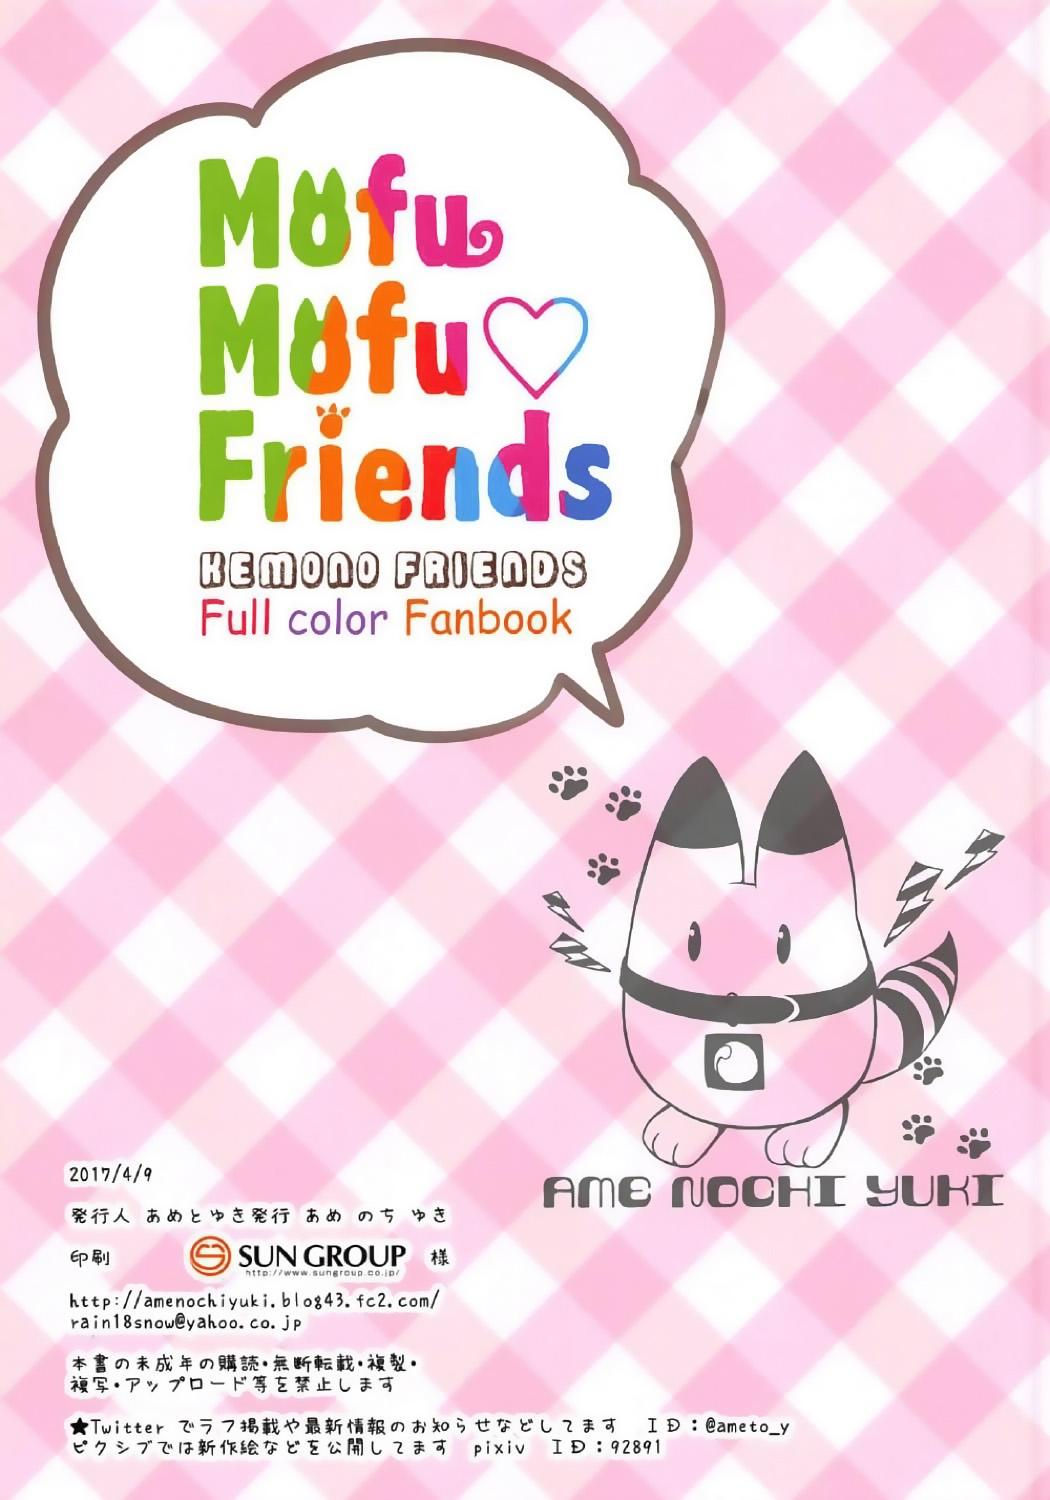 Les Mofu Mofu Friends - Kemono friends Free Blow Job - Page 16